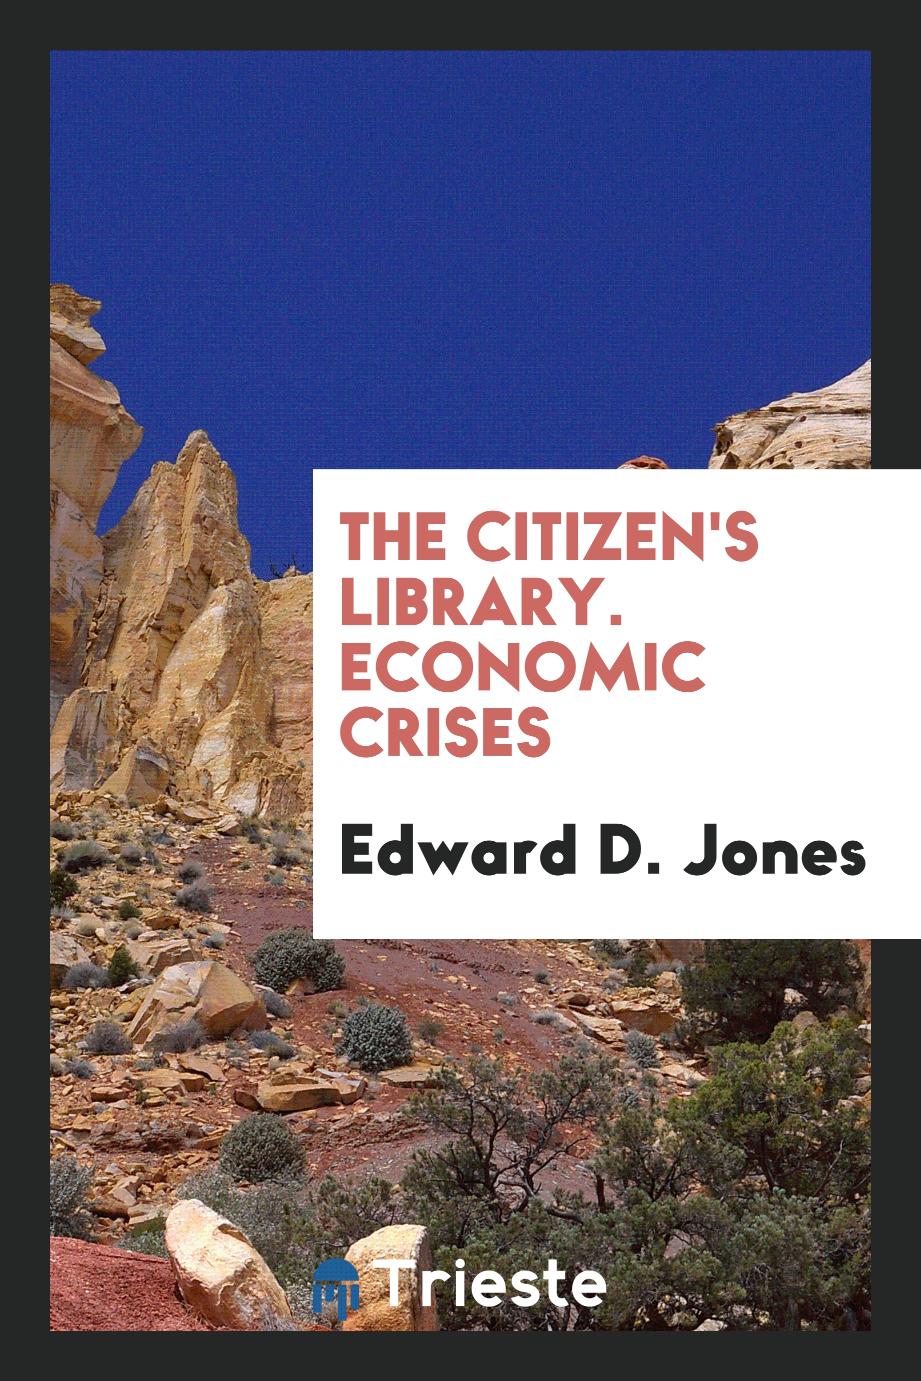 Edward D. Jones - The Citizen's Library. Economic Crises